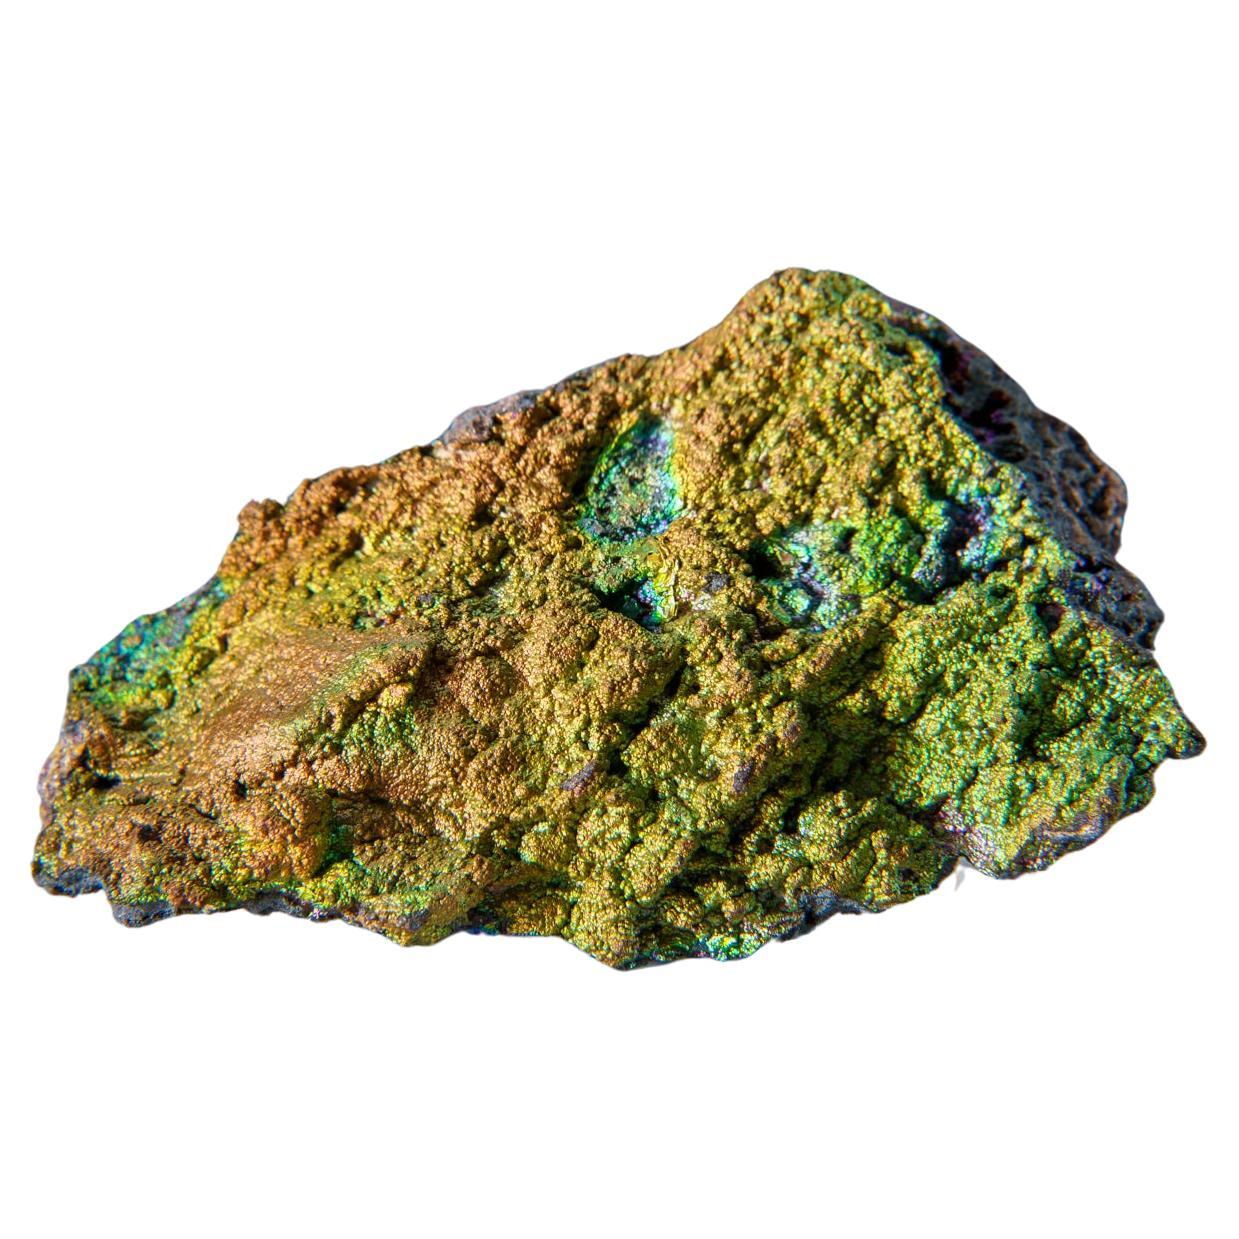 Blue Green Fluorite from Rogerley Mine, Weardale, County Durham, England